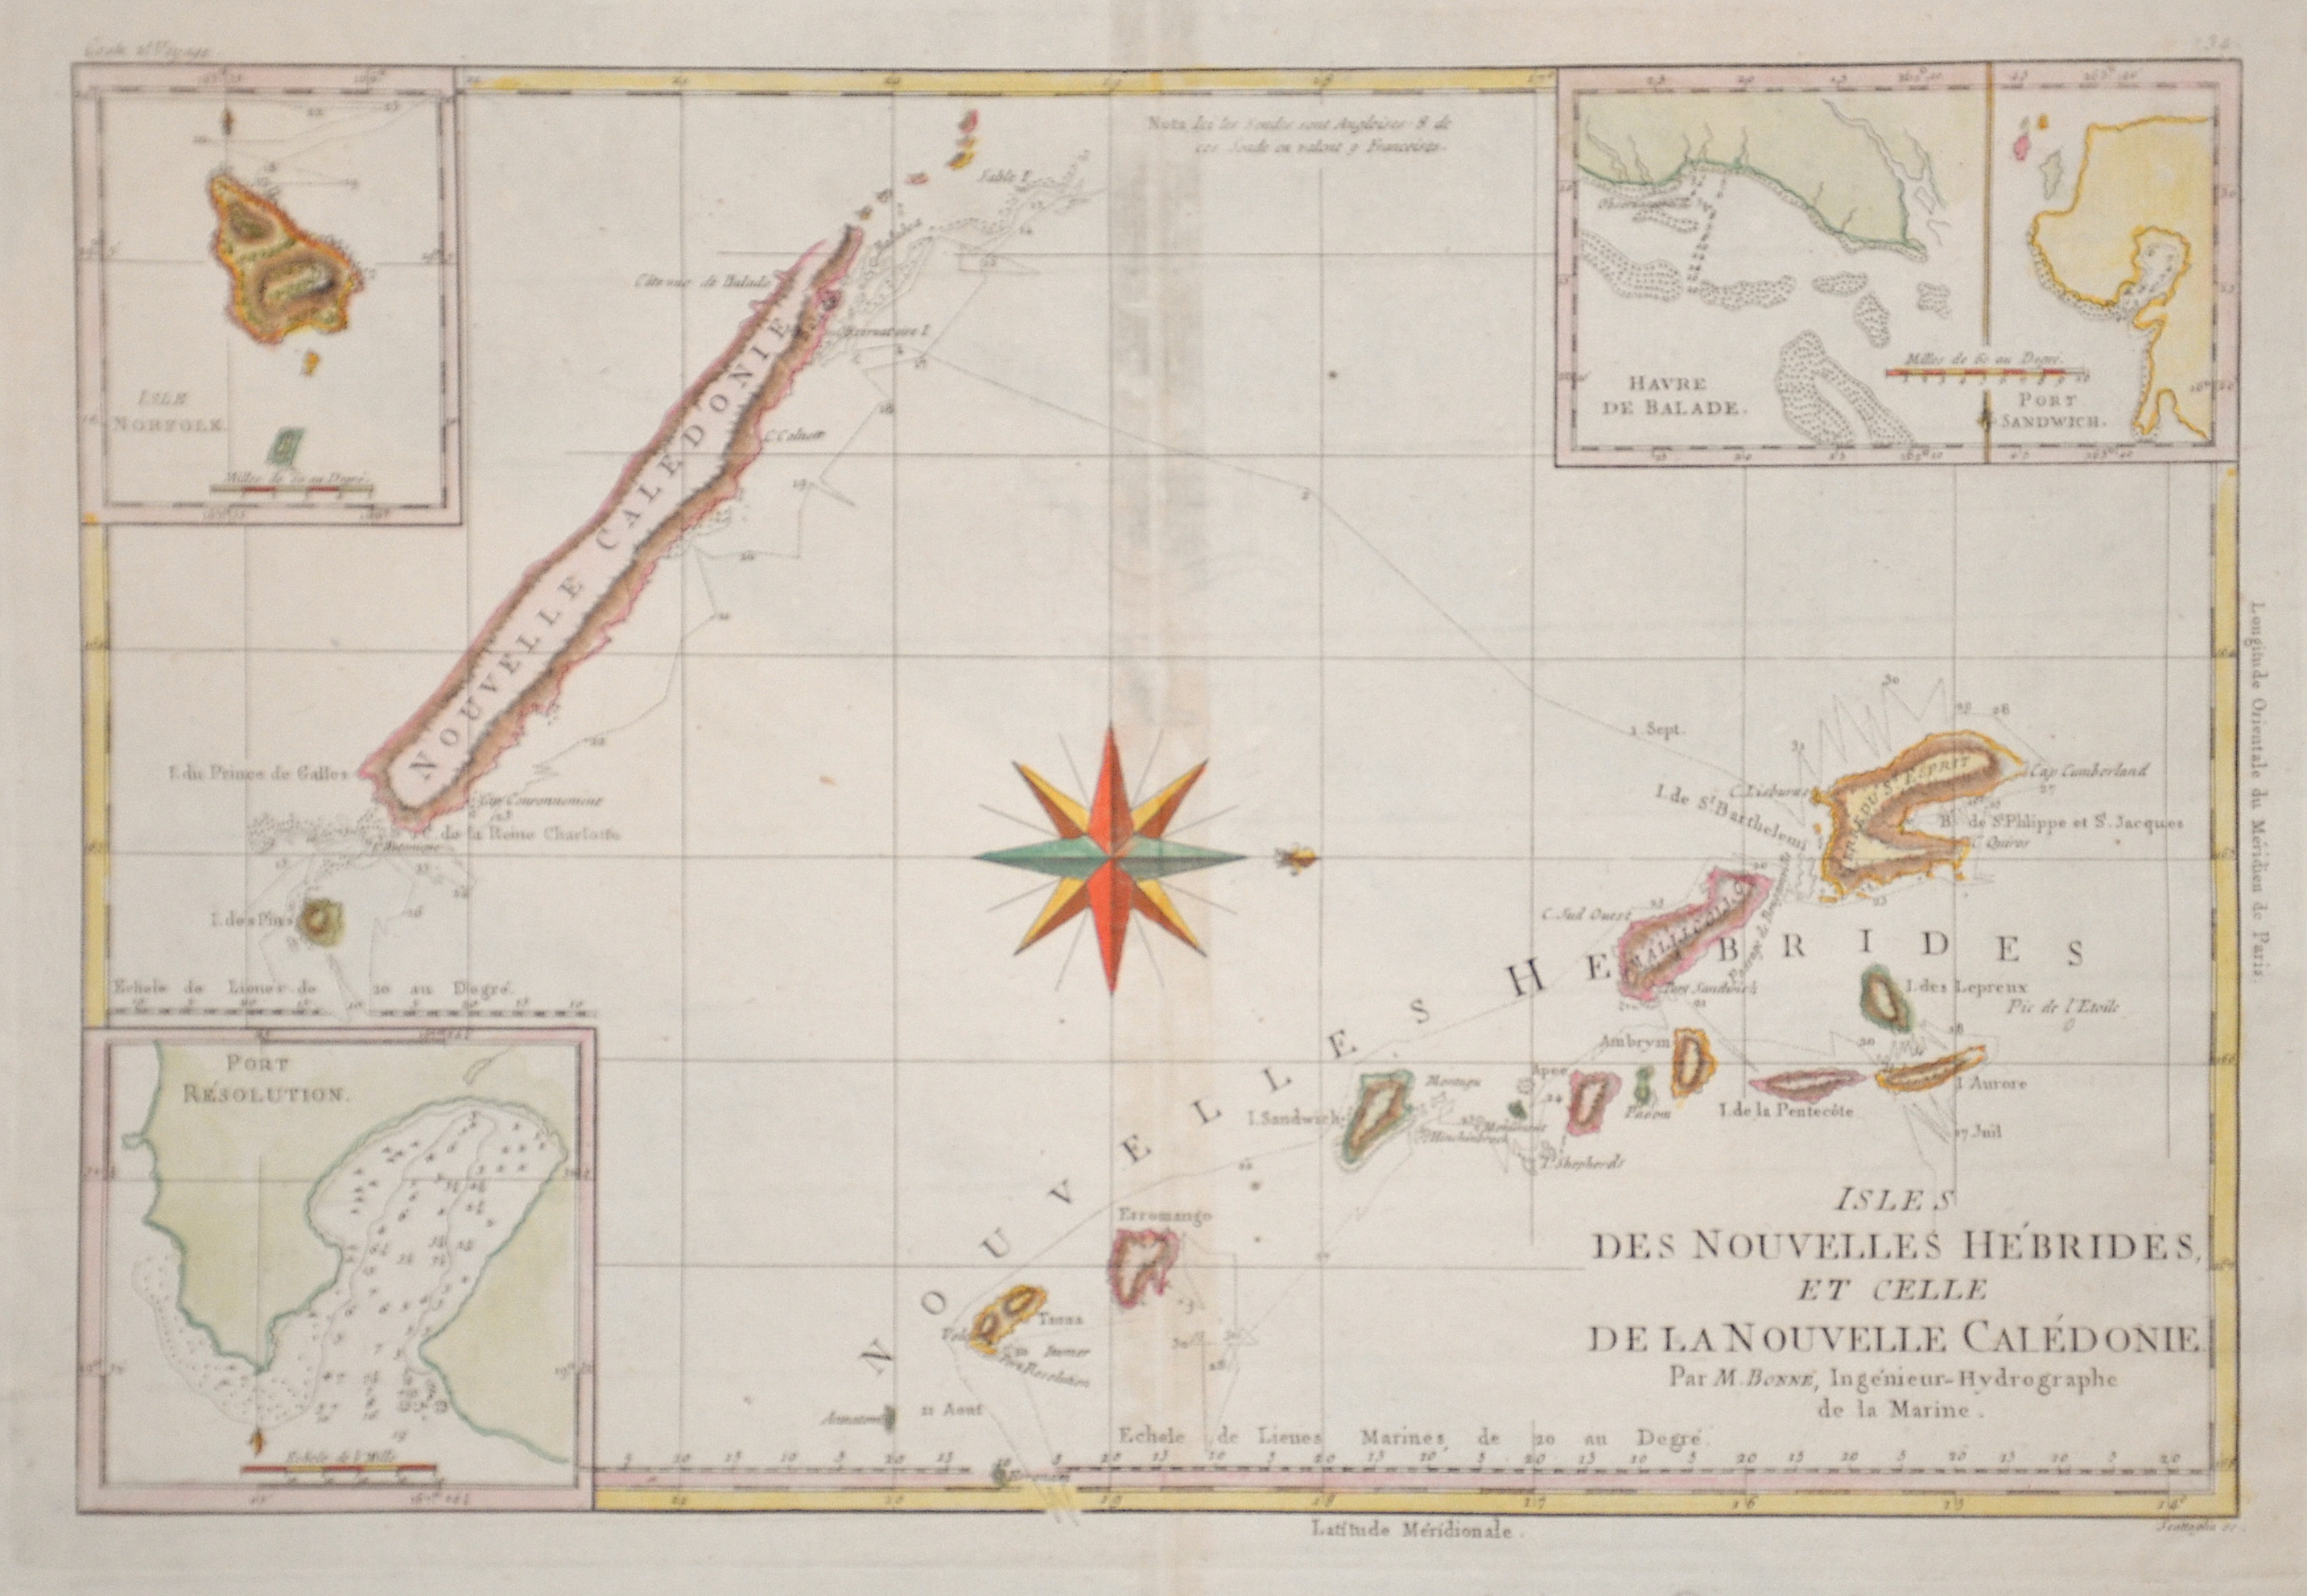 Bonne Rigobert Isles des Nouvelles Hebrides, et celle de la nouvelle Caledonie